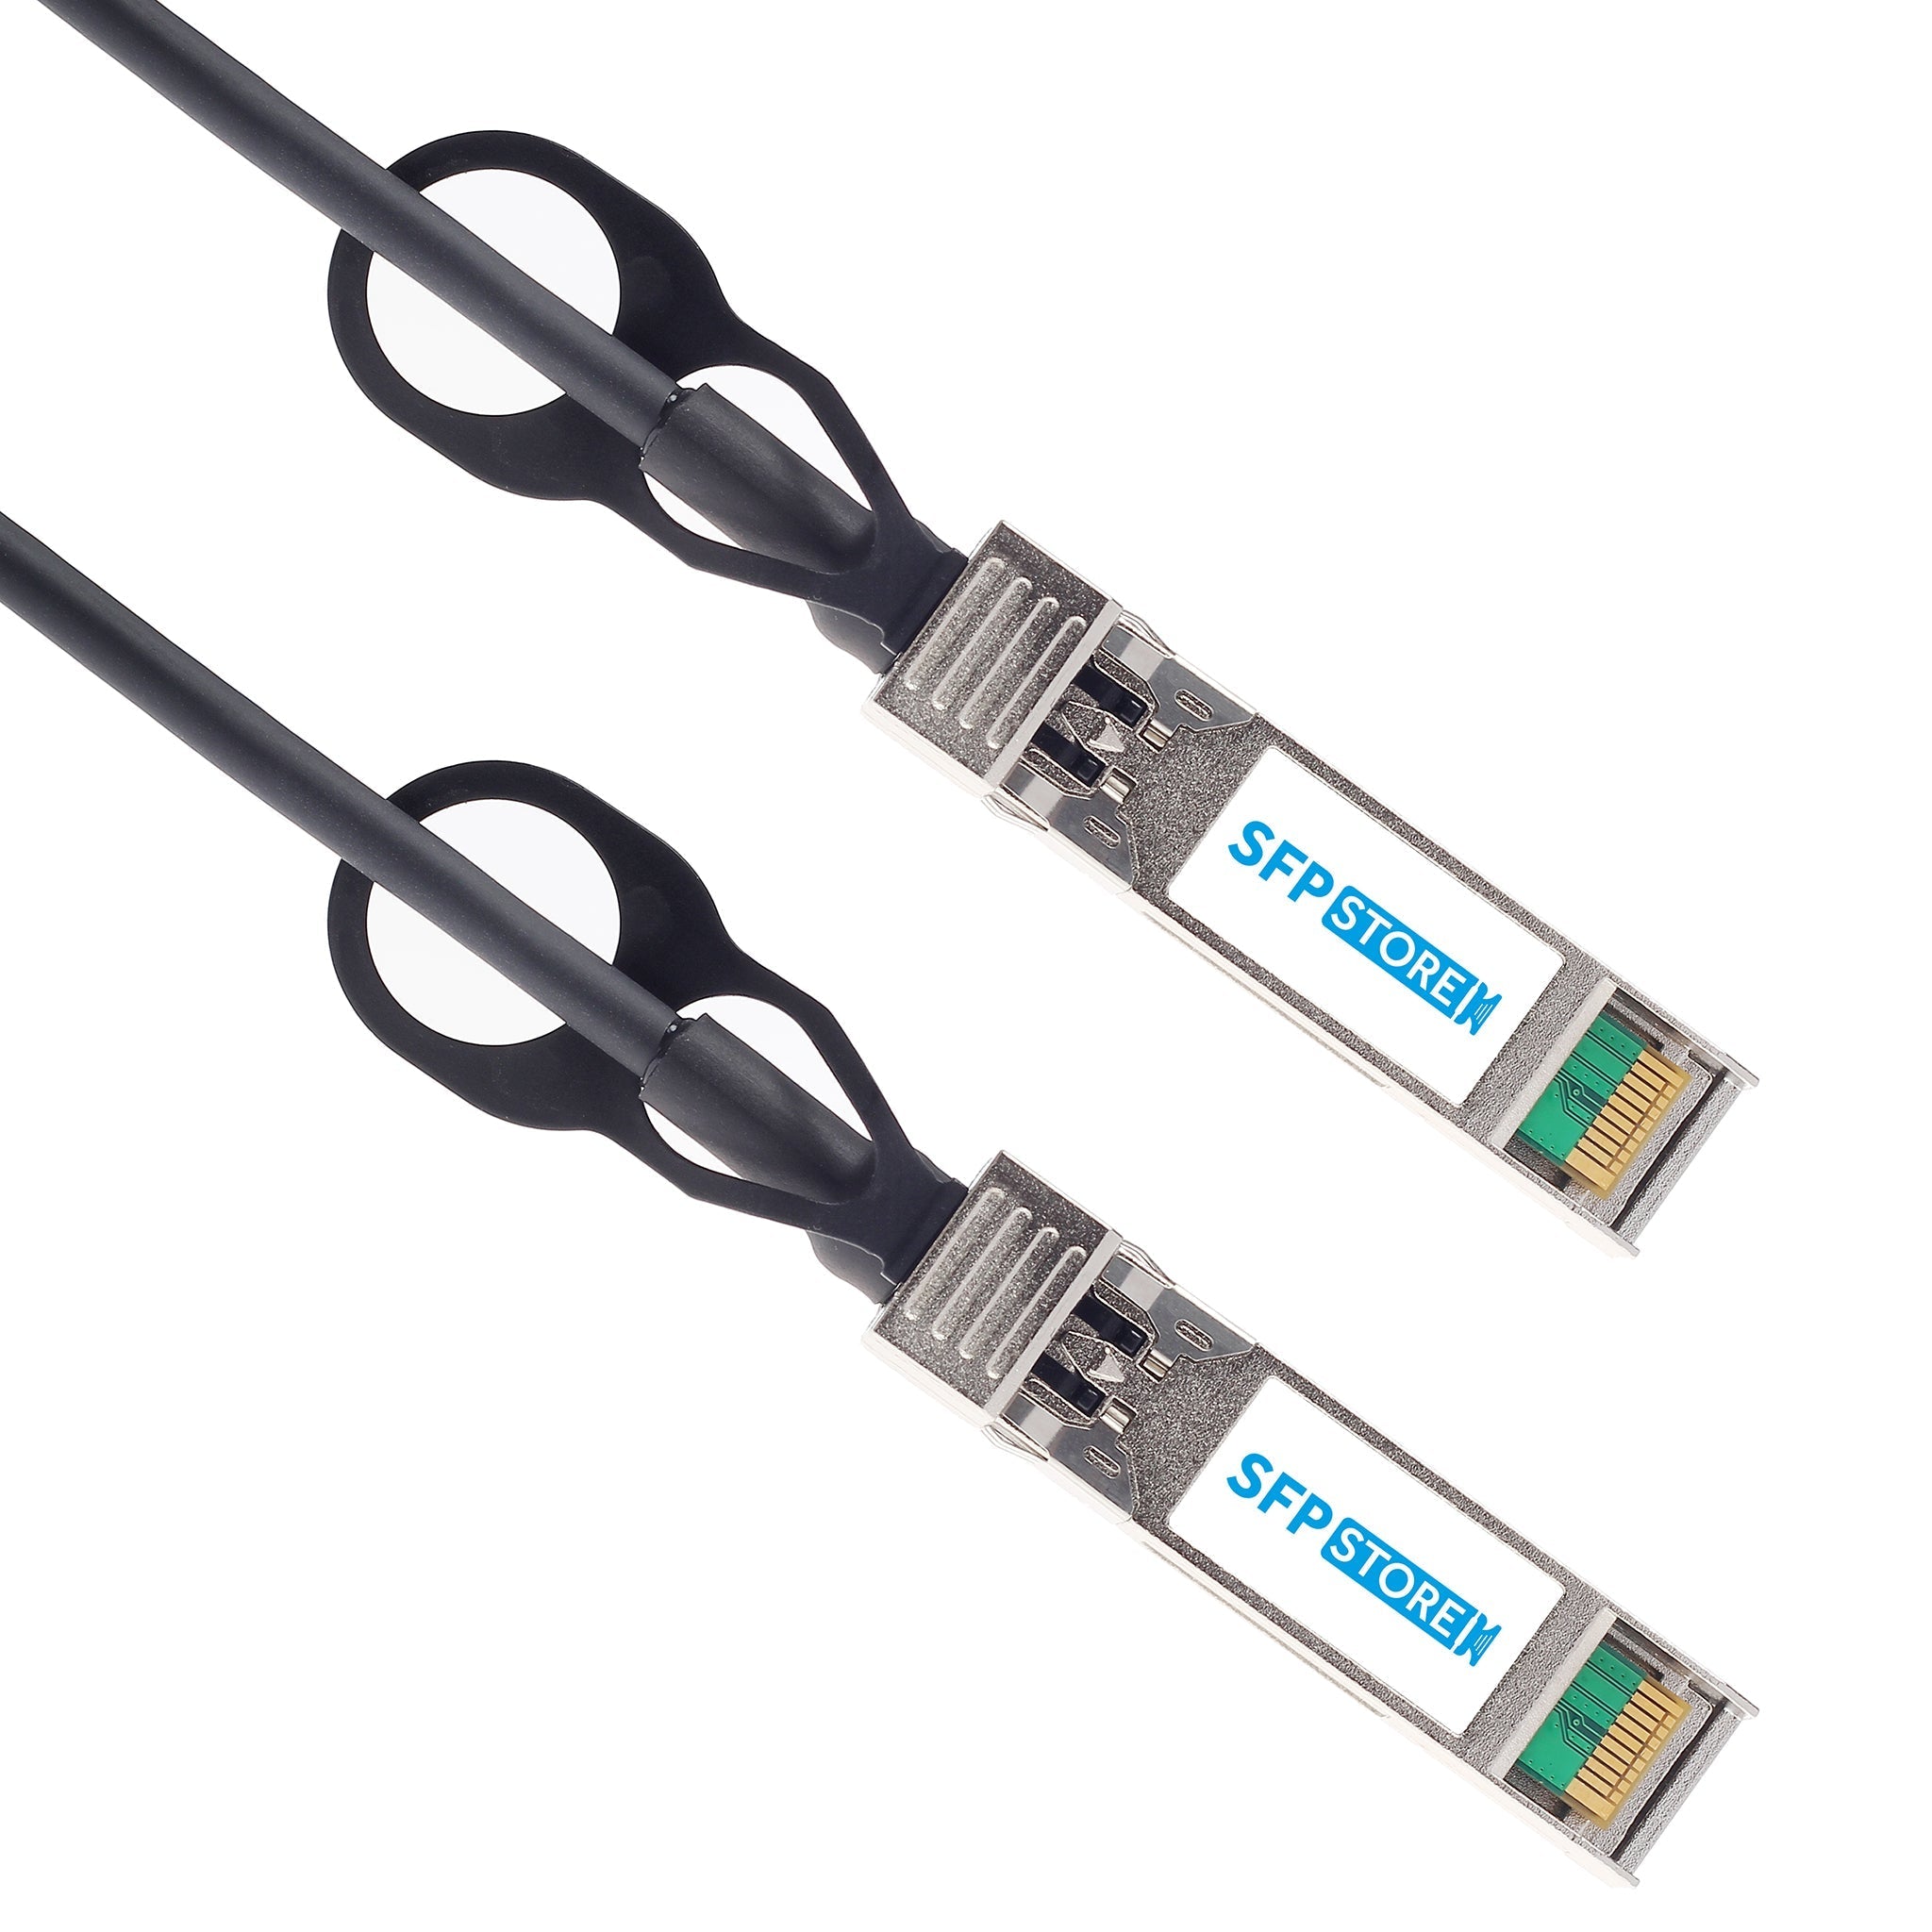 10G-SFPP-TWX-P-0201-C - 2m Brocade/Ruckus Compatible 10G SFP+ Passive Direct Attach Copper Twinax Cable